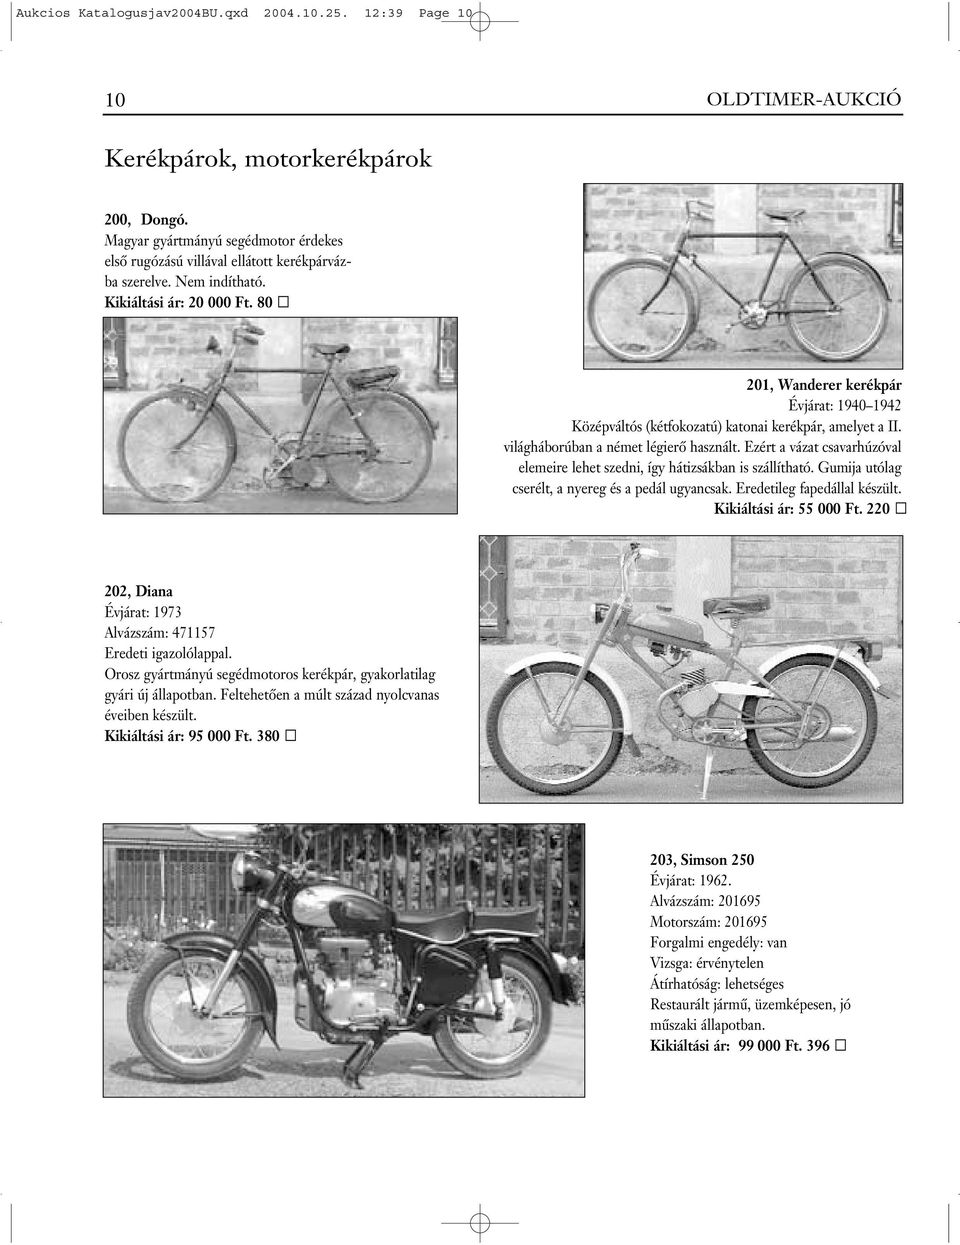 80 201, Wanderer kerékpár Évjárat: 1940 1942 Középváltós (kétfokozatú) katonai kerékpár, amelyet a II. világháborúban a német légierô használt.